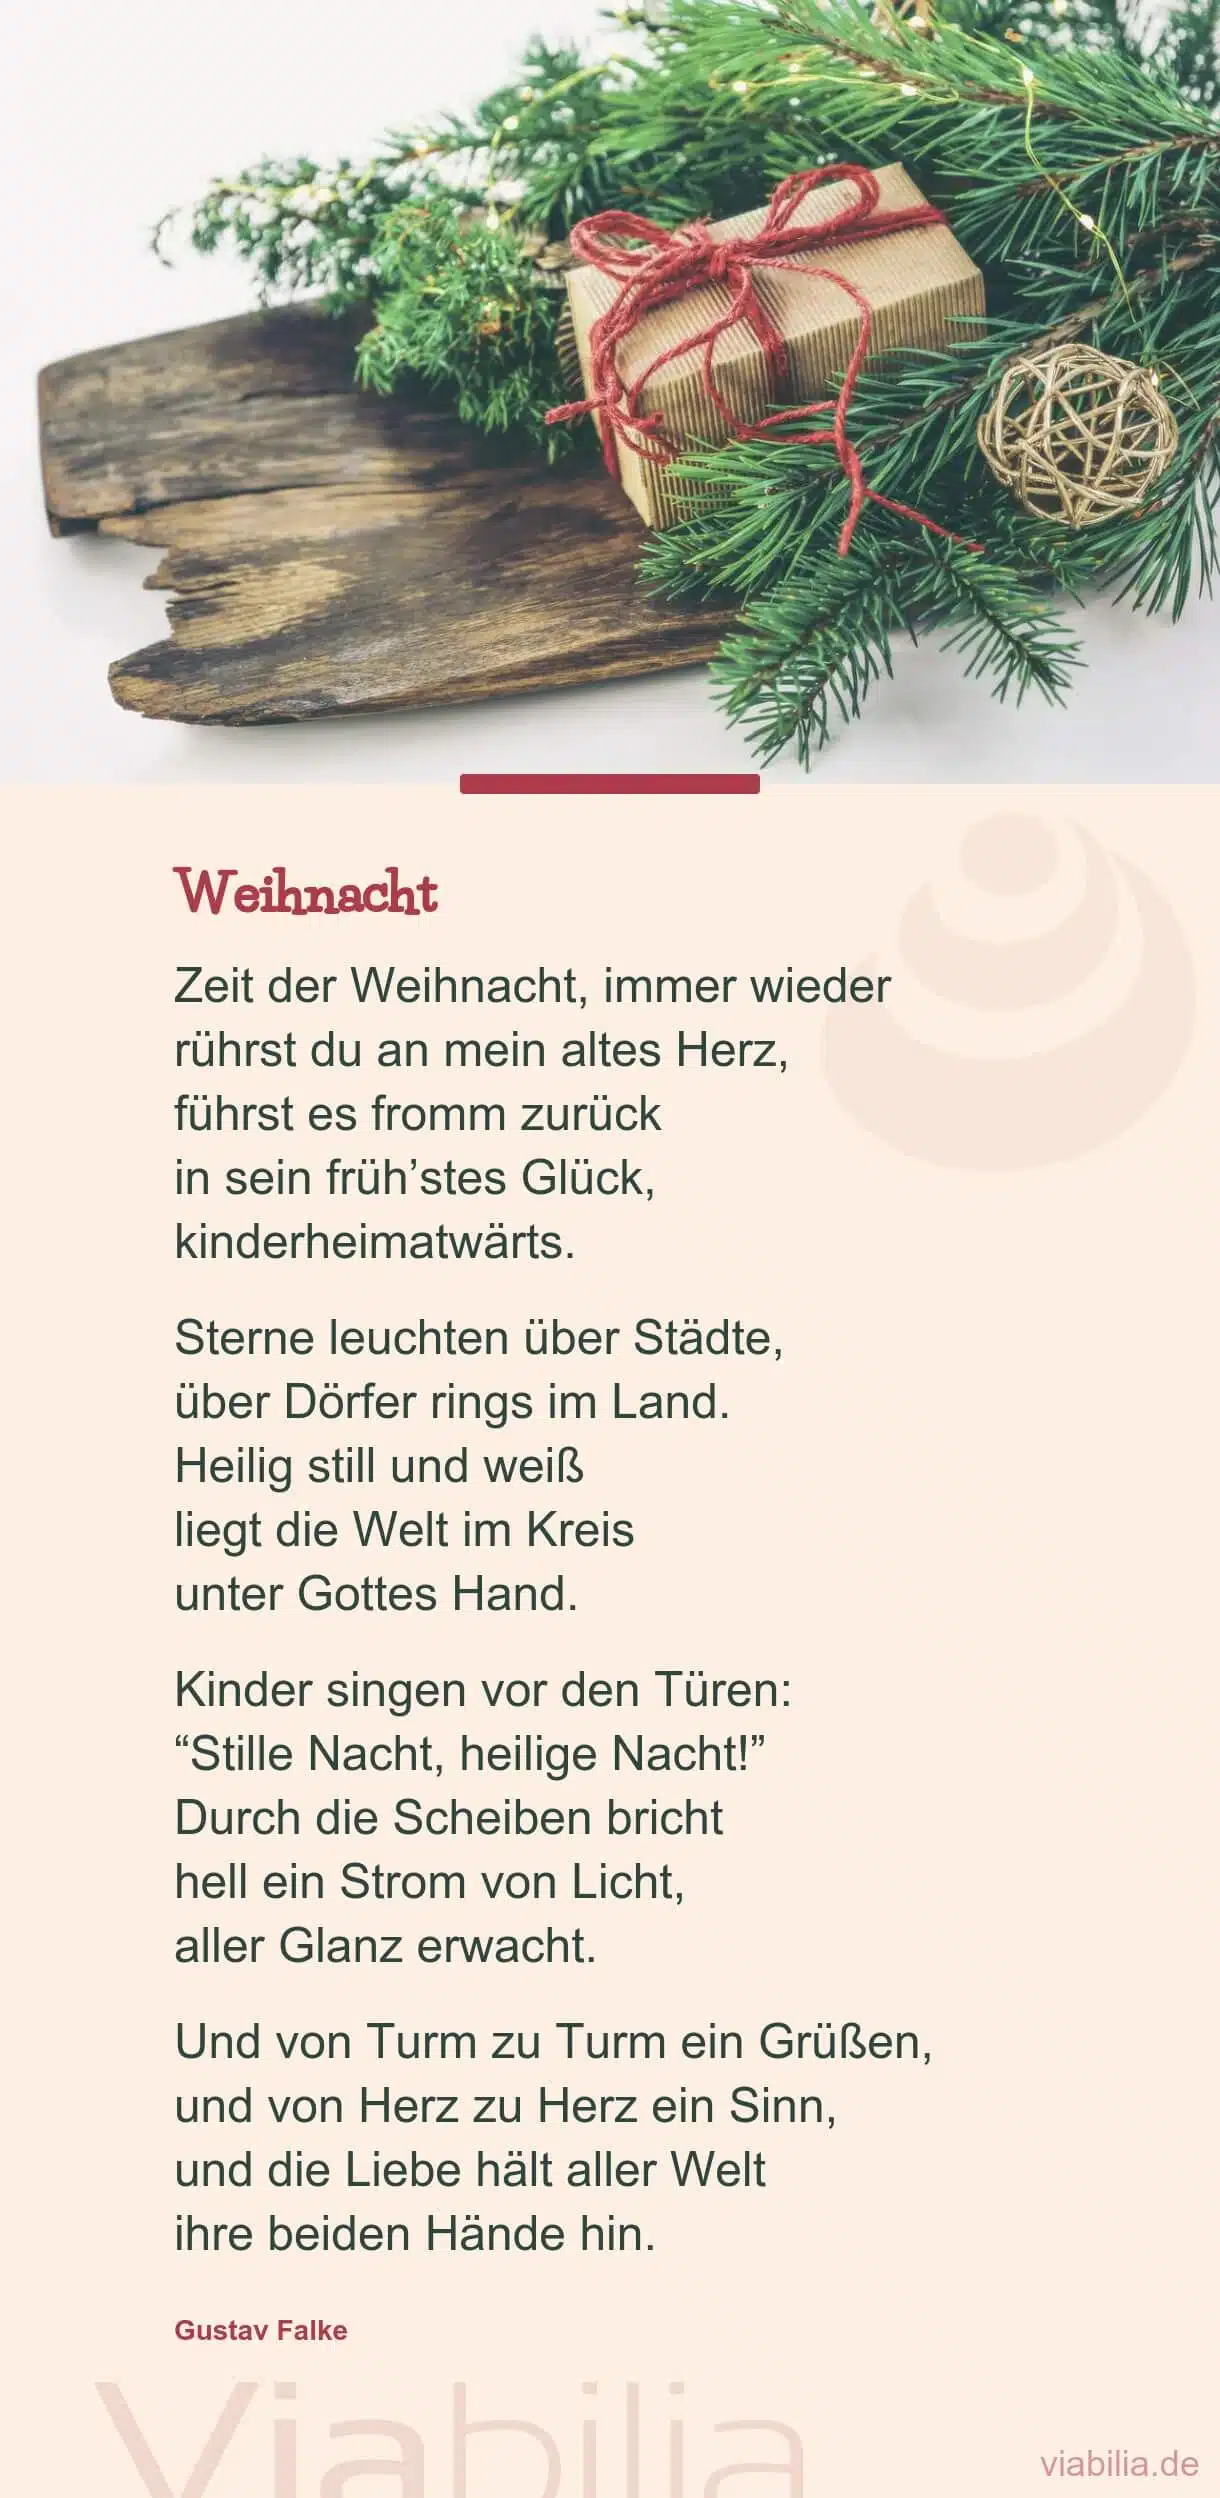 Klassisches Weihnachtsgedicht: Weihnacht, stille Nacht